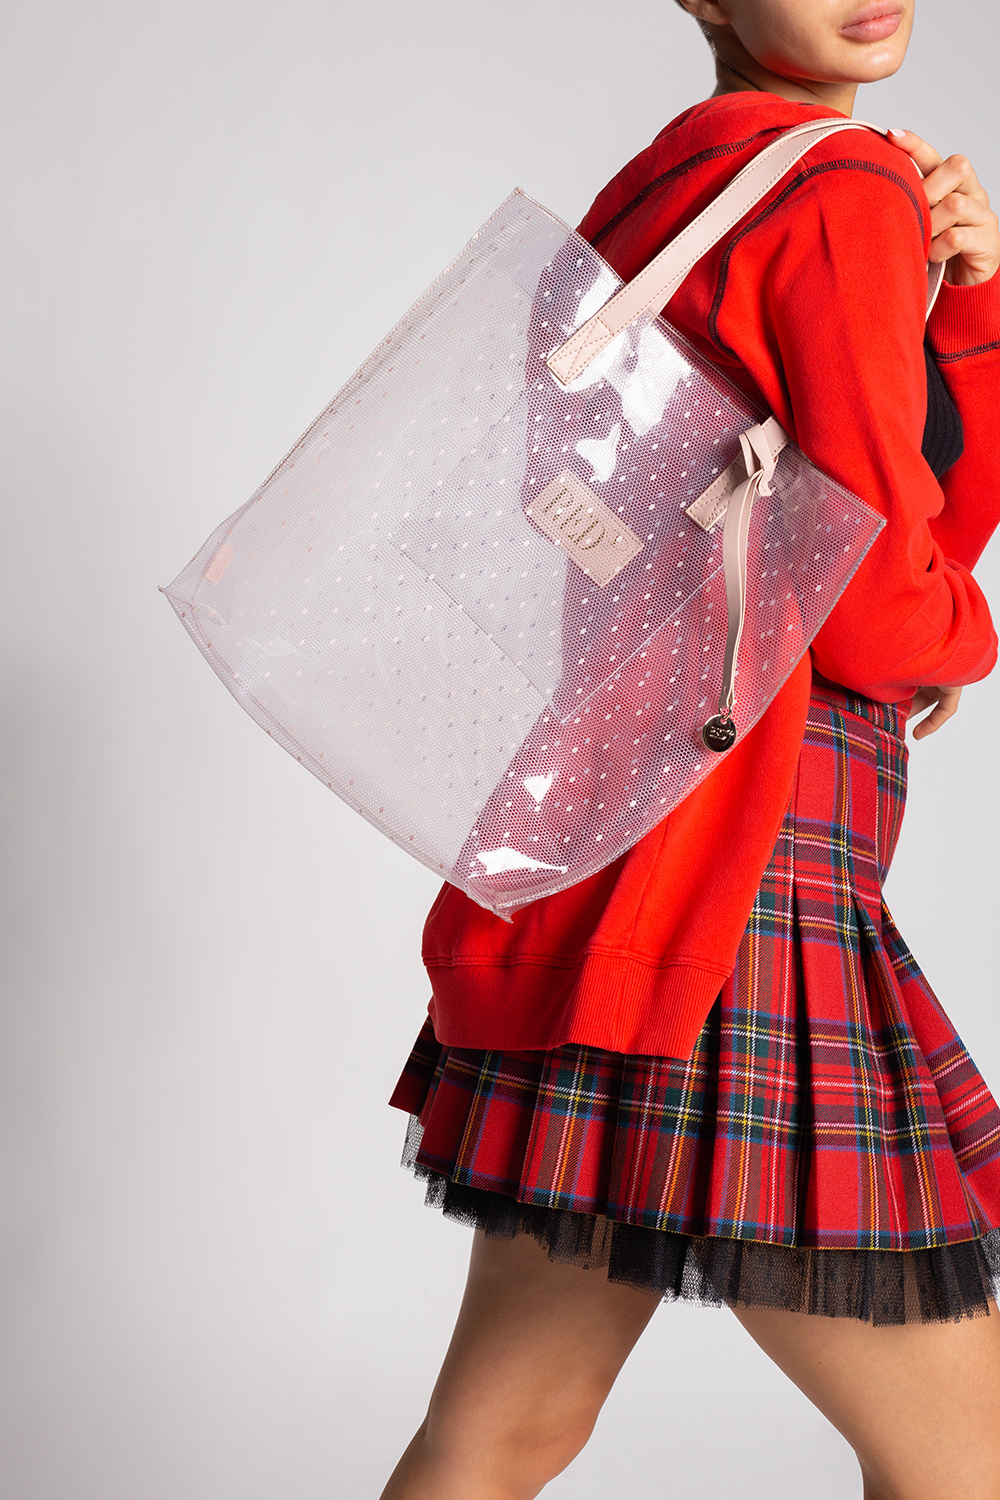 bind Fordampe Tap Shopper bag Red Valentino - IetpShops GB